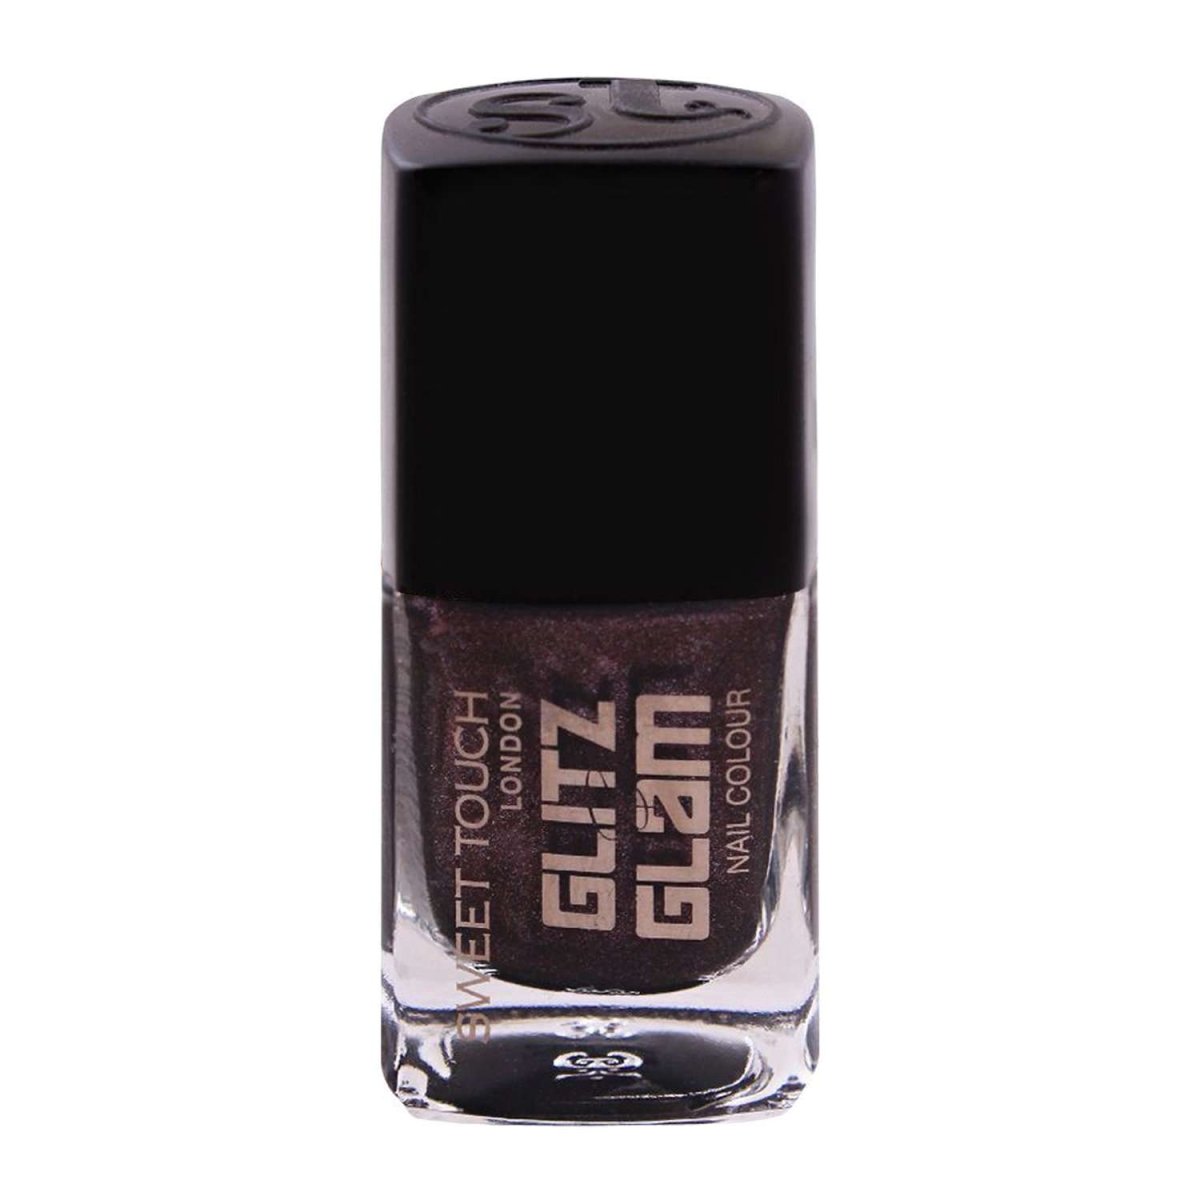 Glitz & Glam Nail Colour - ST 251 Galaxy